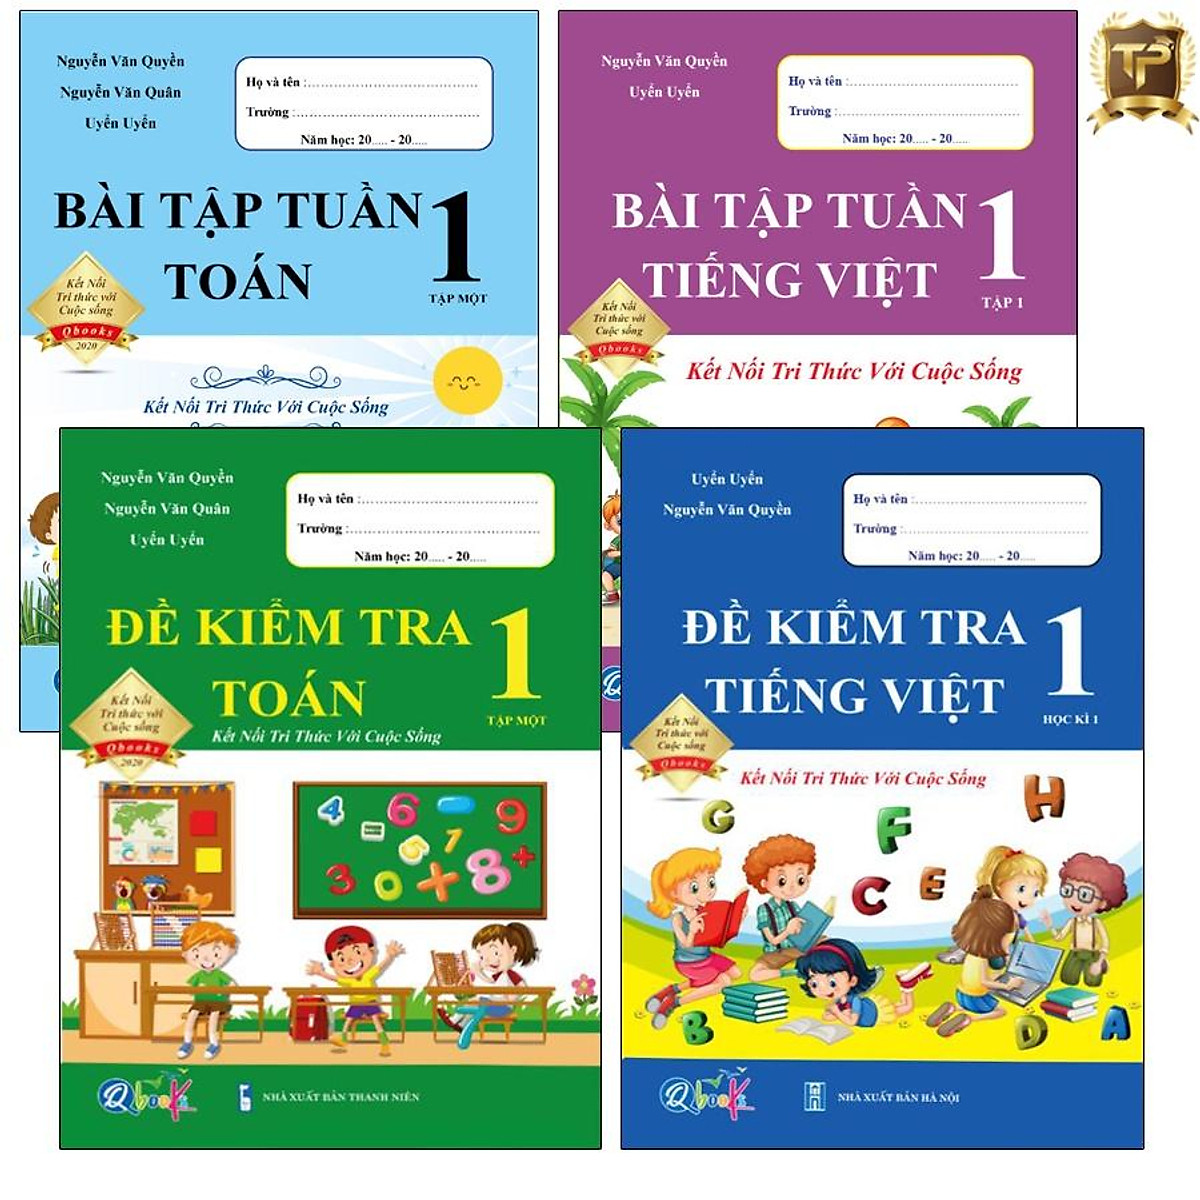 Sách - Combo Bài Tập Tuần và Đề Kiểm Tra 1 - Toán và Tiếng Việt học kì 1 - Kết nối tri thức với cuộc sống (4 cuốn)